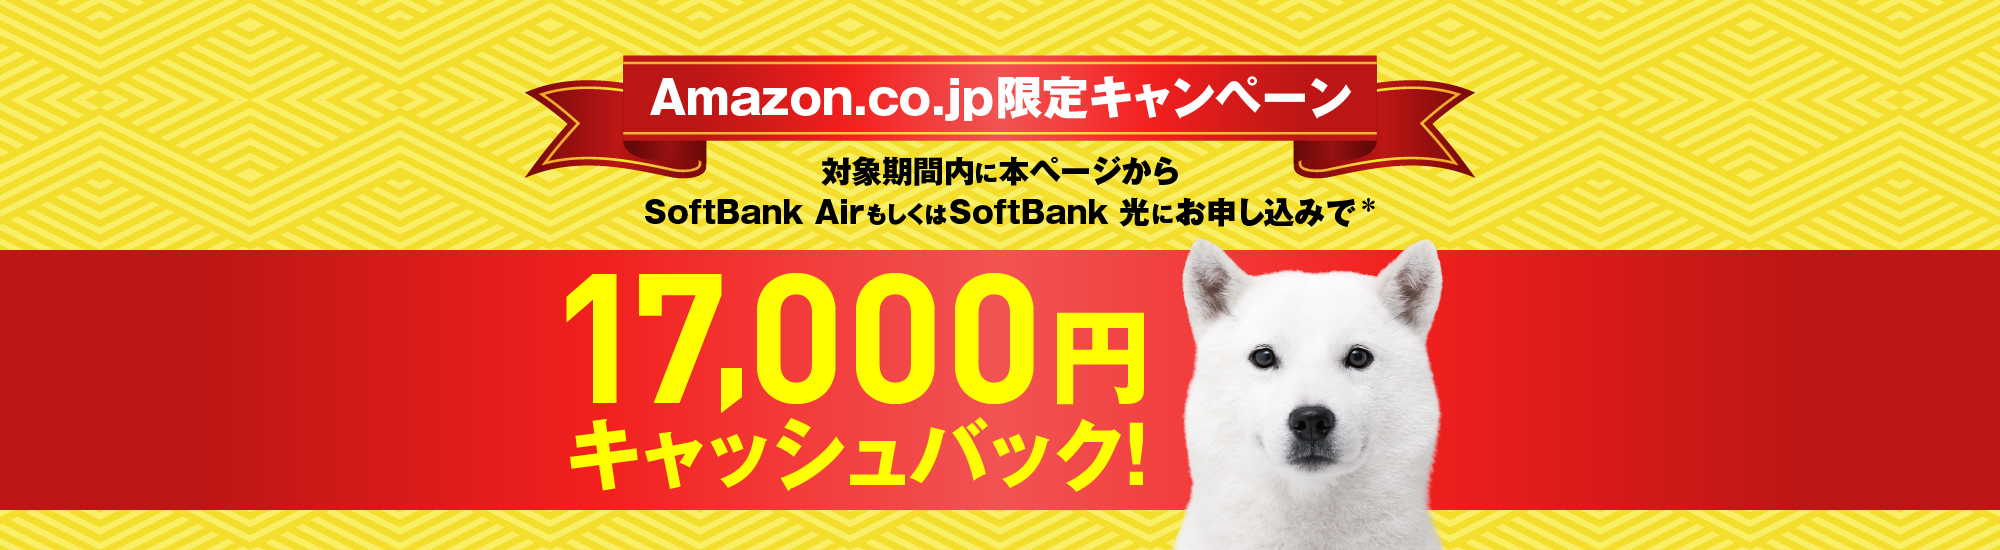 Amazon.co.jp限定キャンペーン 本ページからSoftBank AirもしくはSoftBank 光にお申し込みで* Amazonギフト券 17,000円分キャッシュバック！